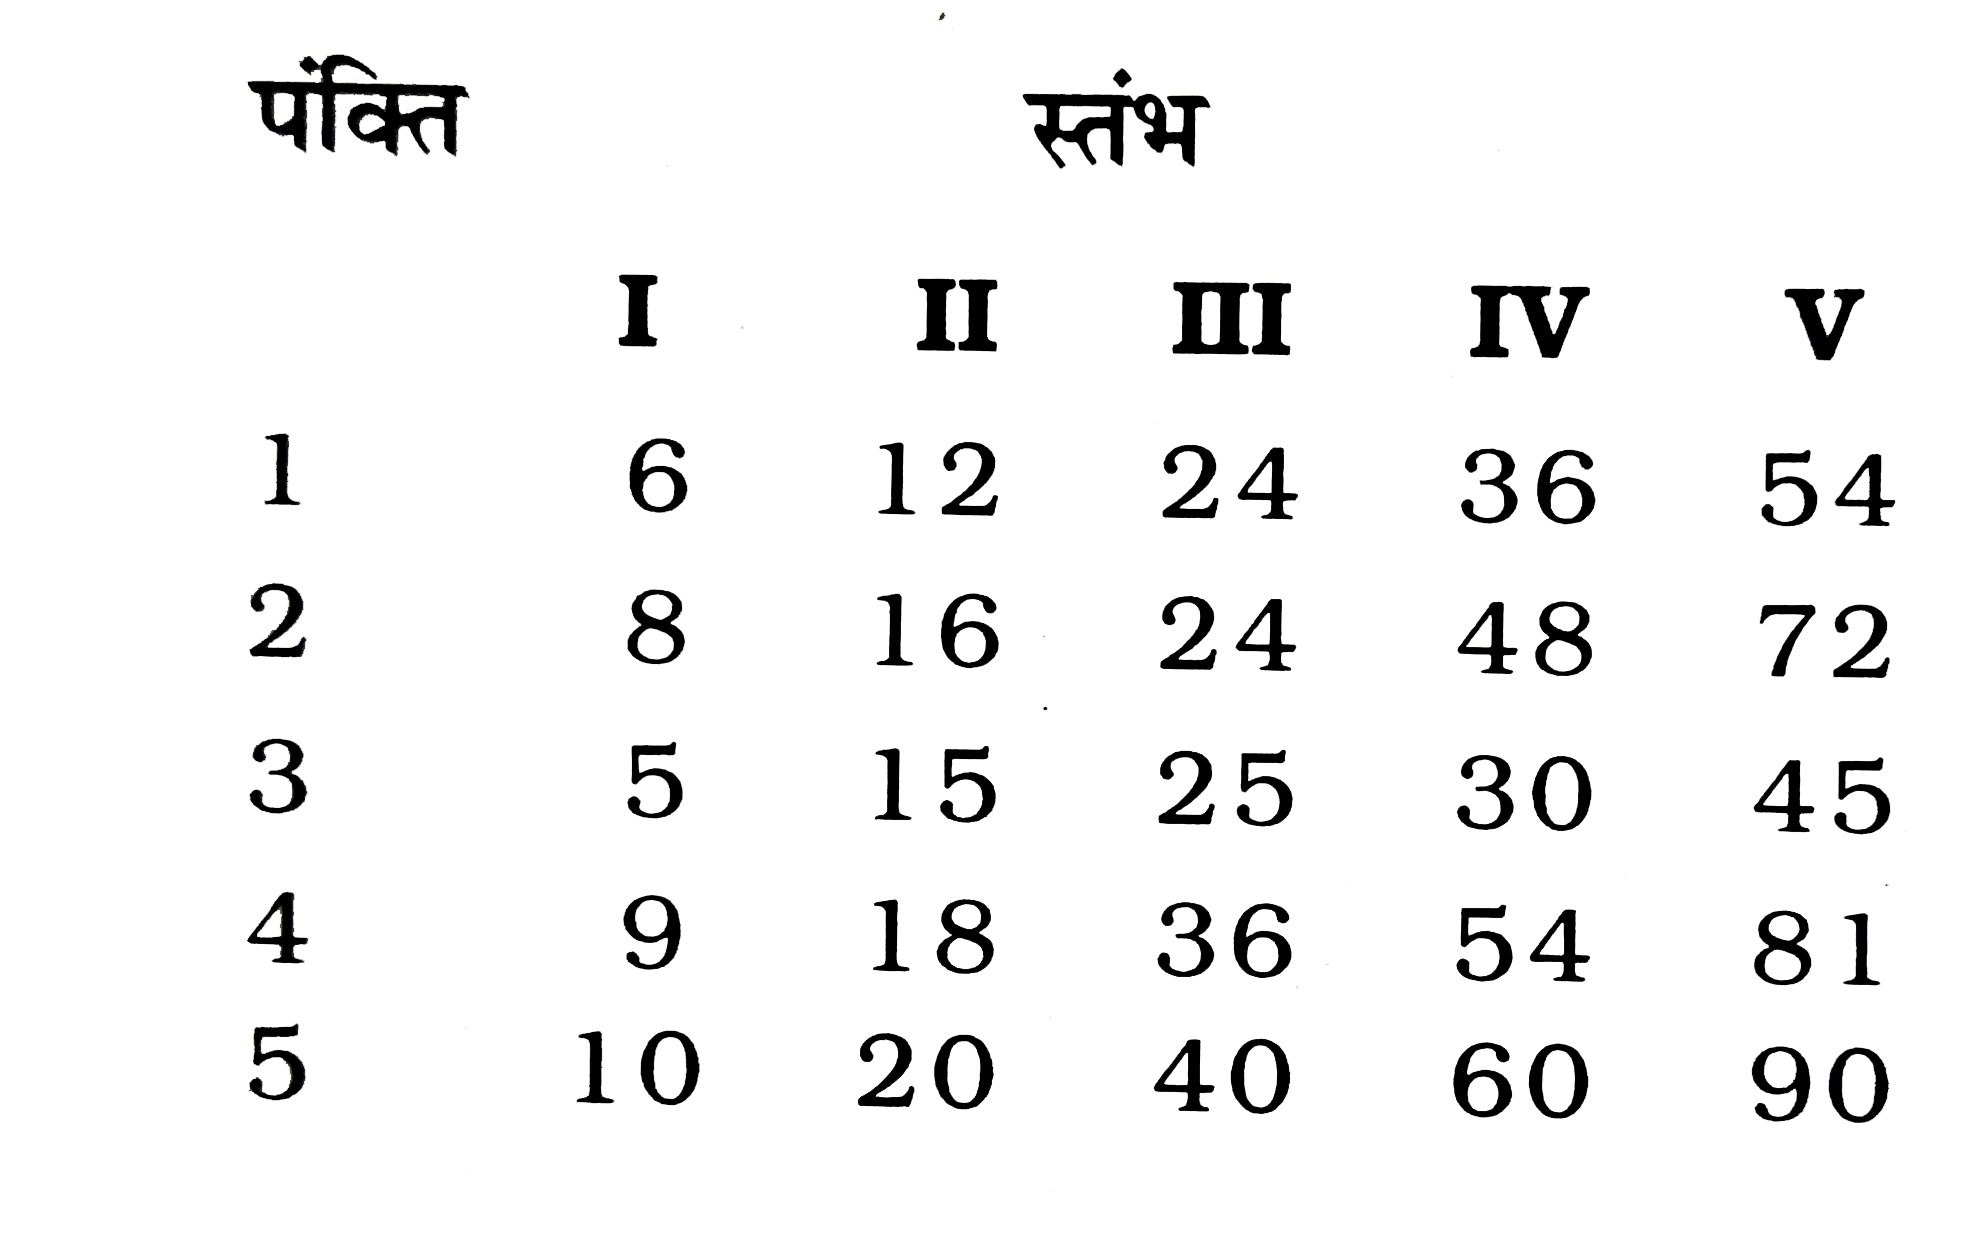 कुछ संख्याएं भिन्न-भिन्न पंक्तियाँ /स्तम्भों में दी गई है। इनमे से कौन सी पंक्तियाँ स्तम्ब आपस में किसी प्रकार संबंधित /संबद्ध है ?